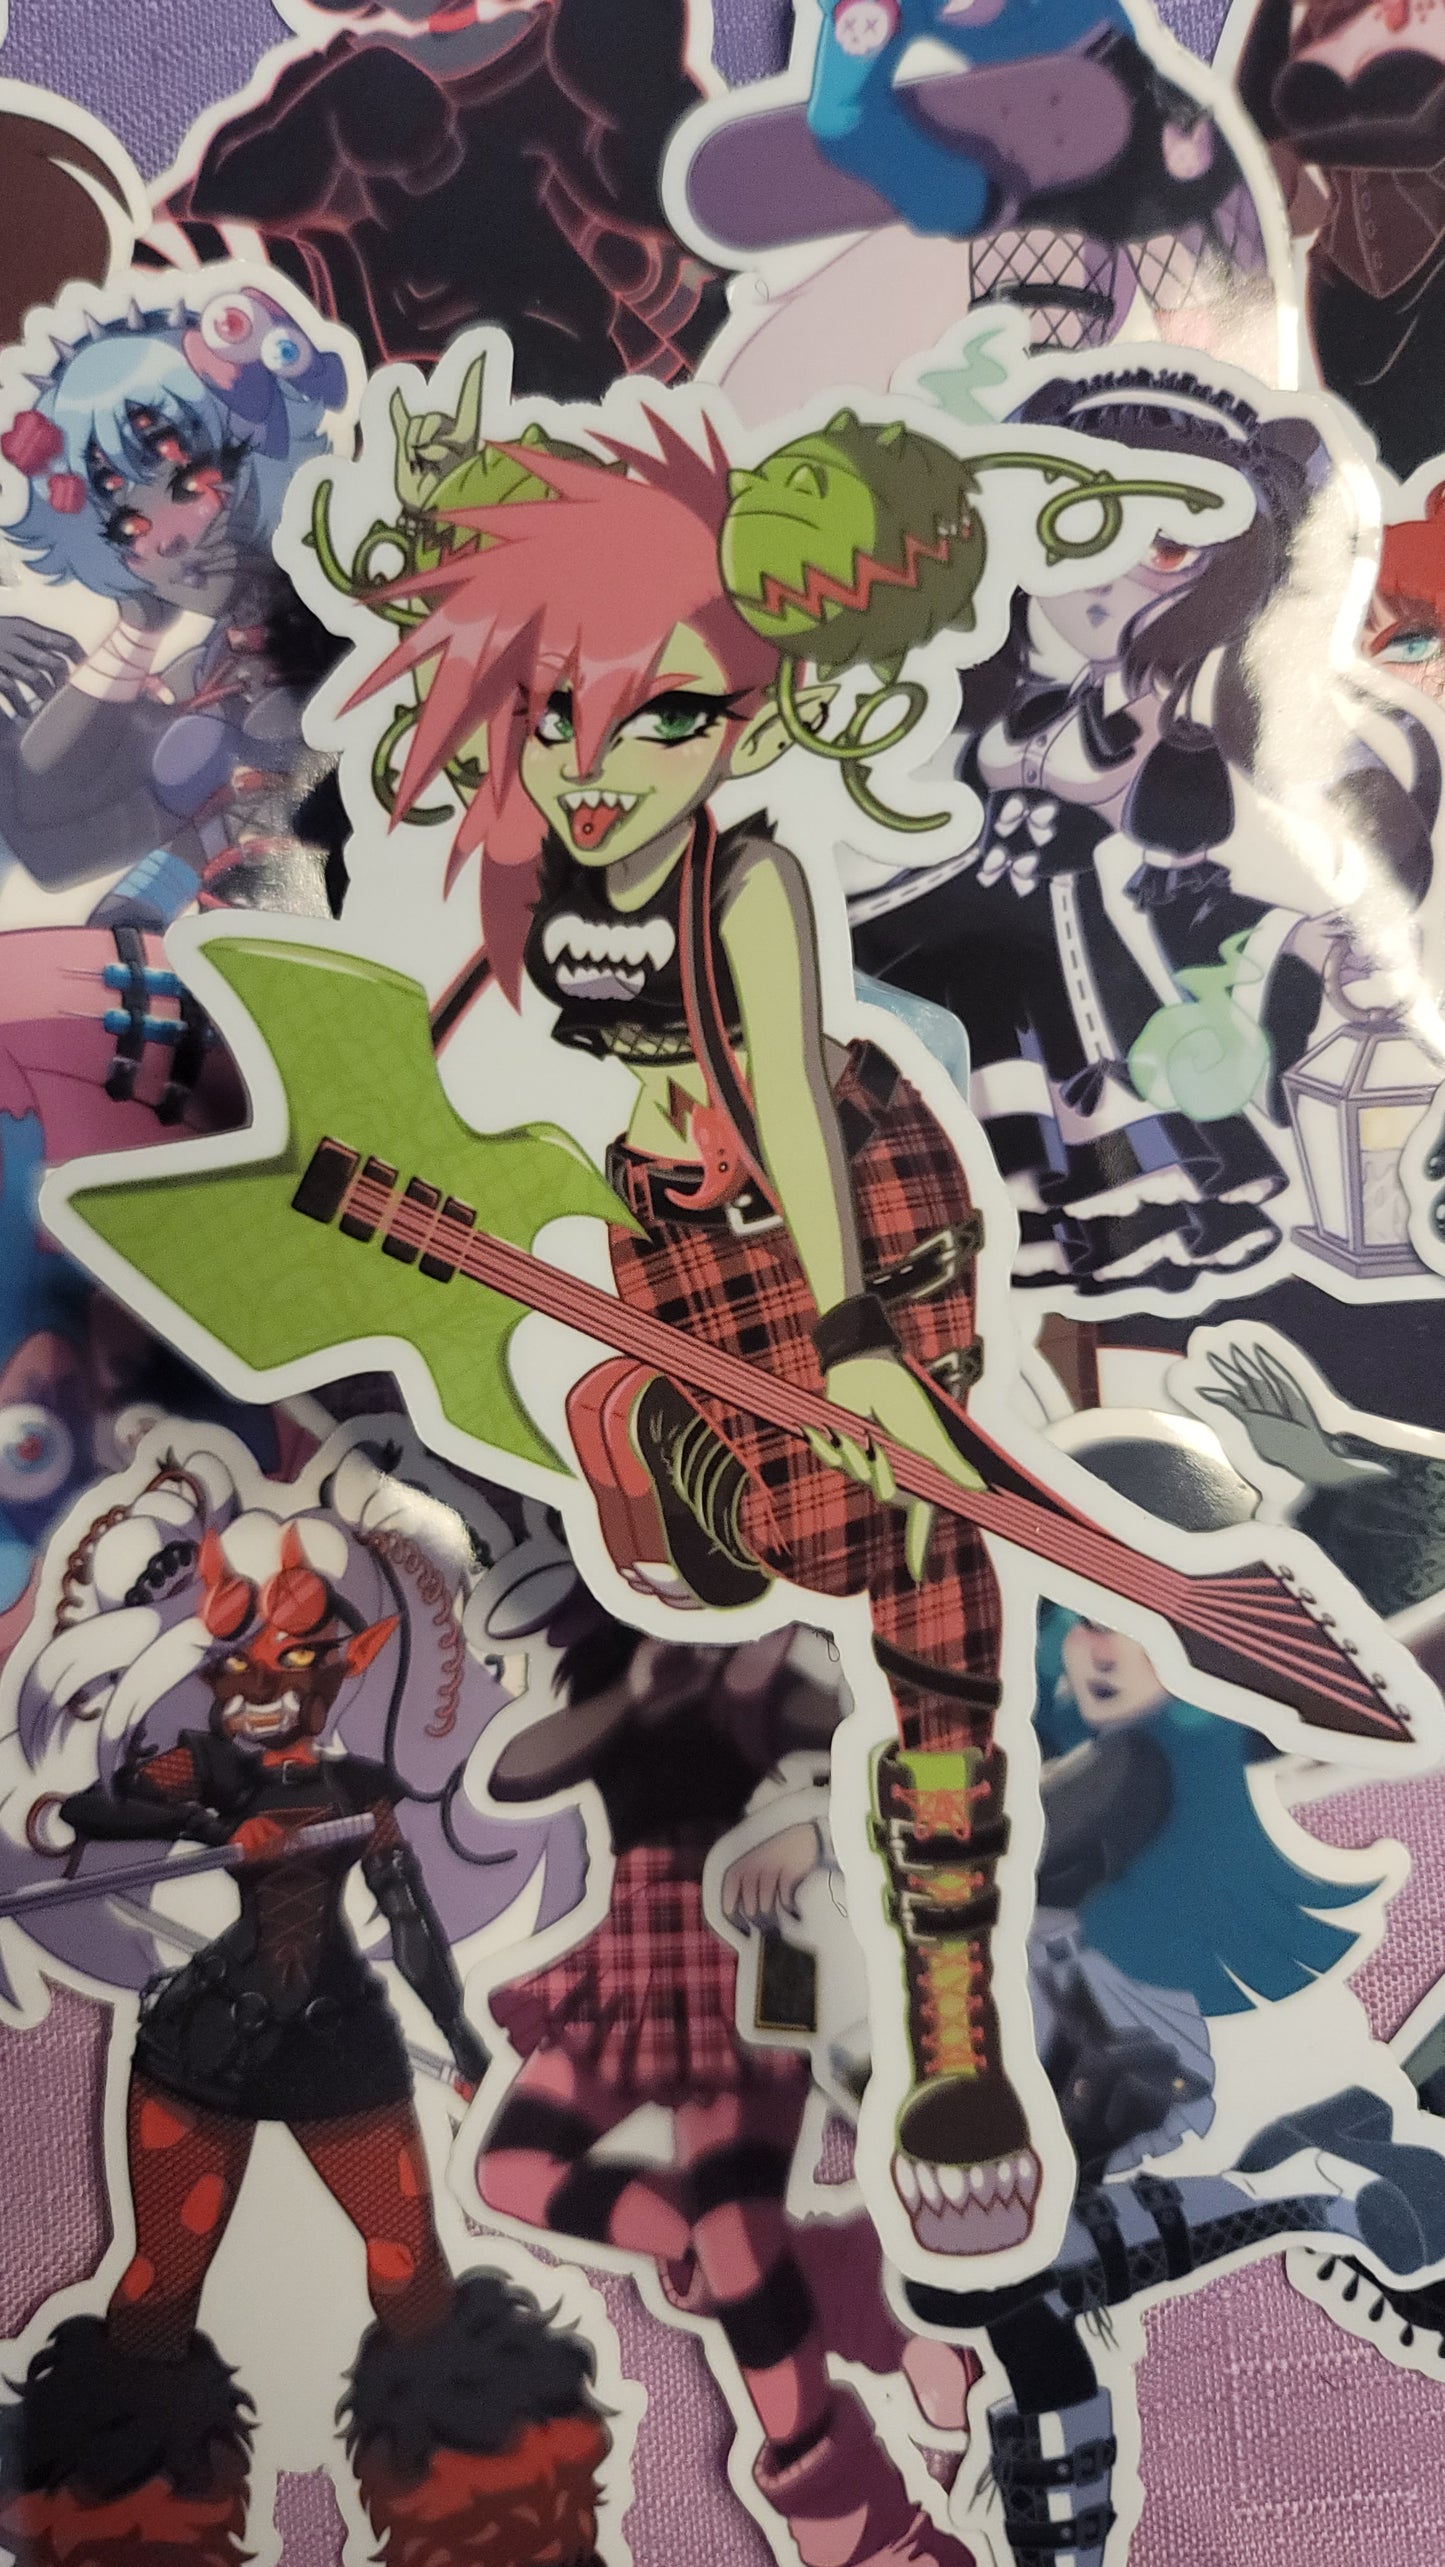 Monster girl stickers